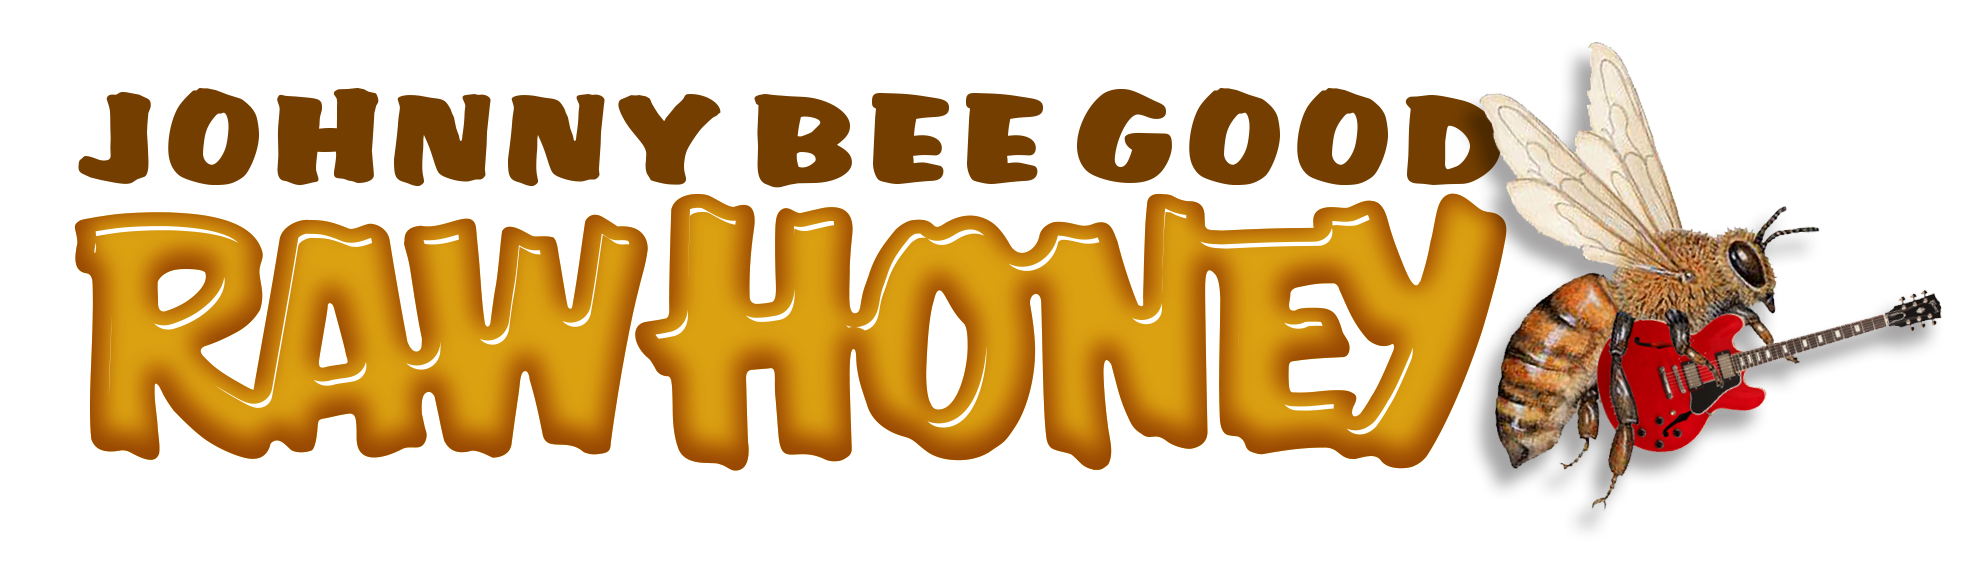 Johnny Bee Good Raw Honey